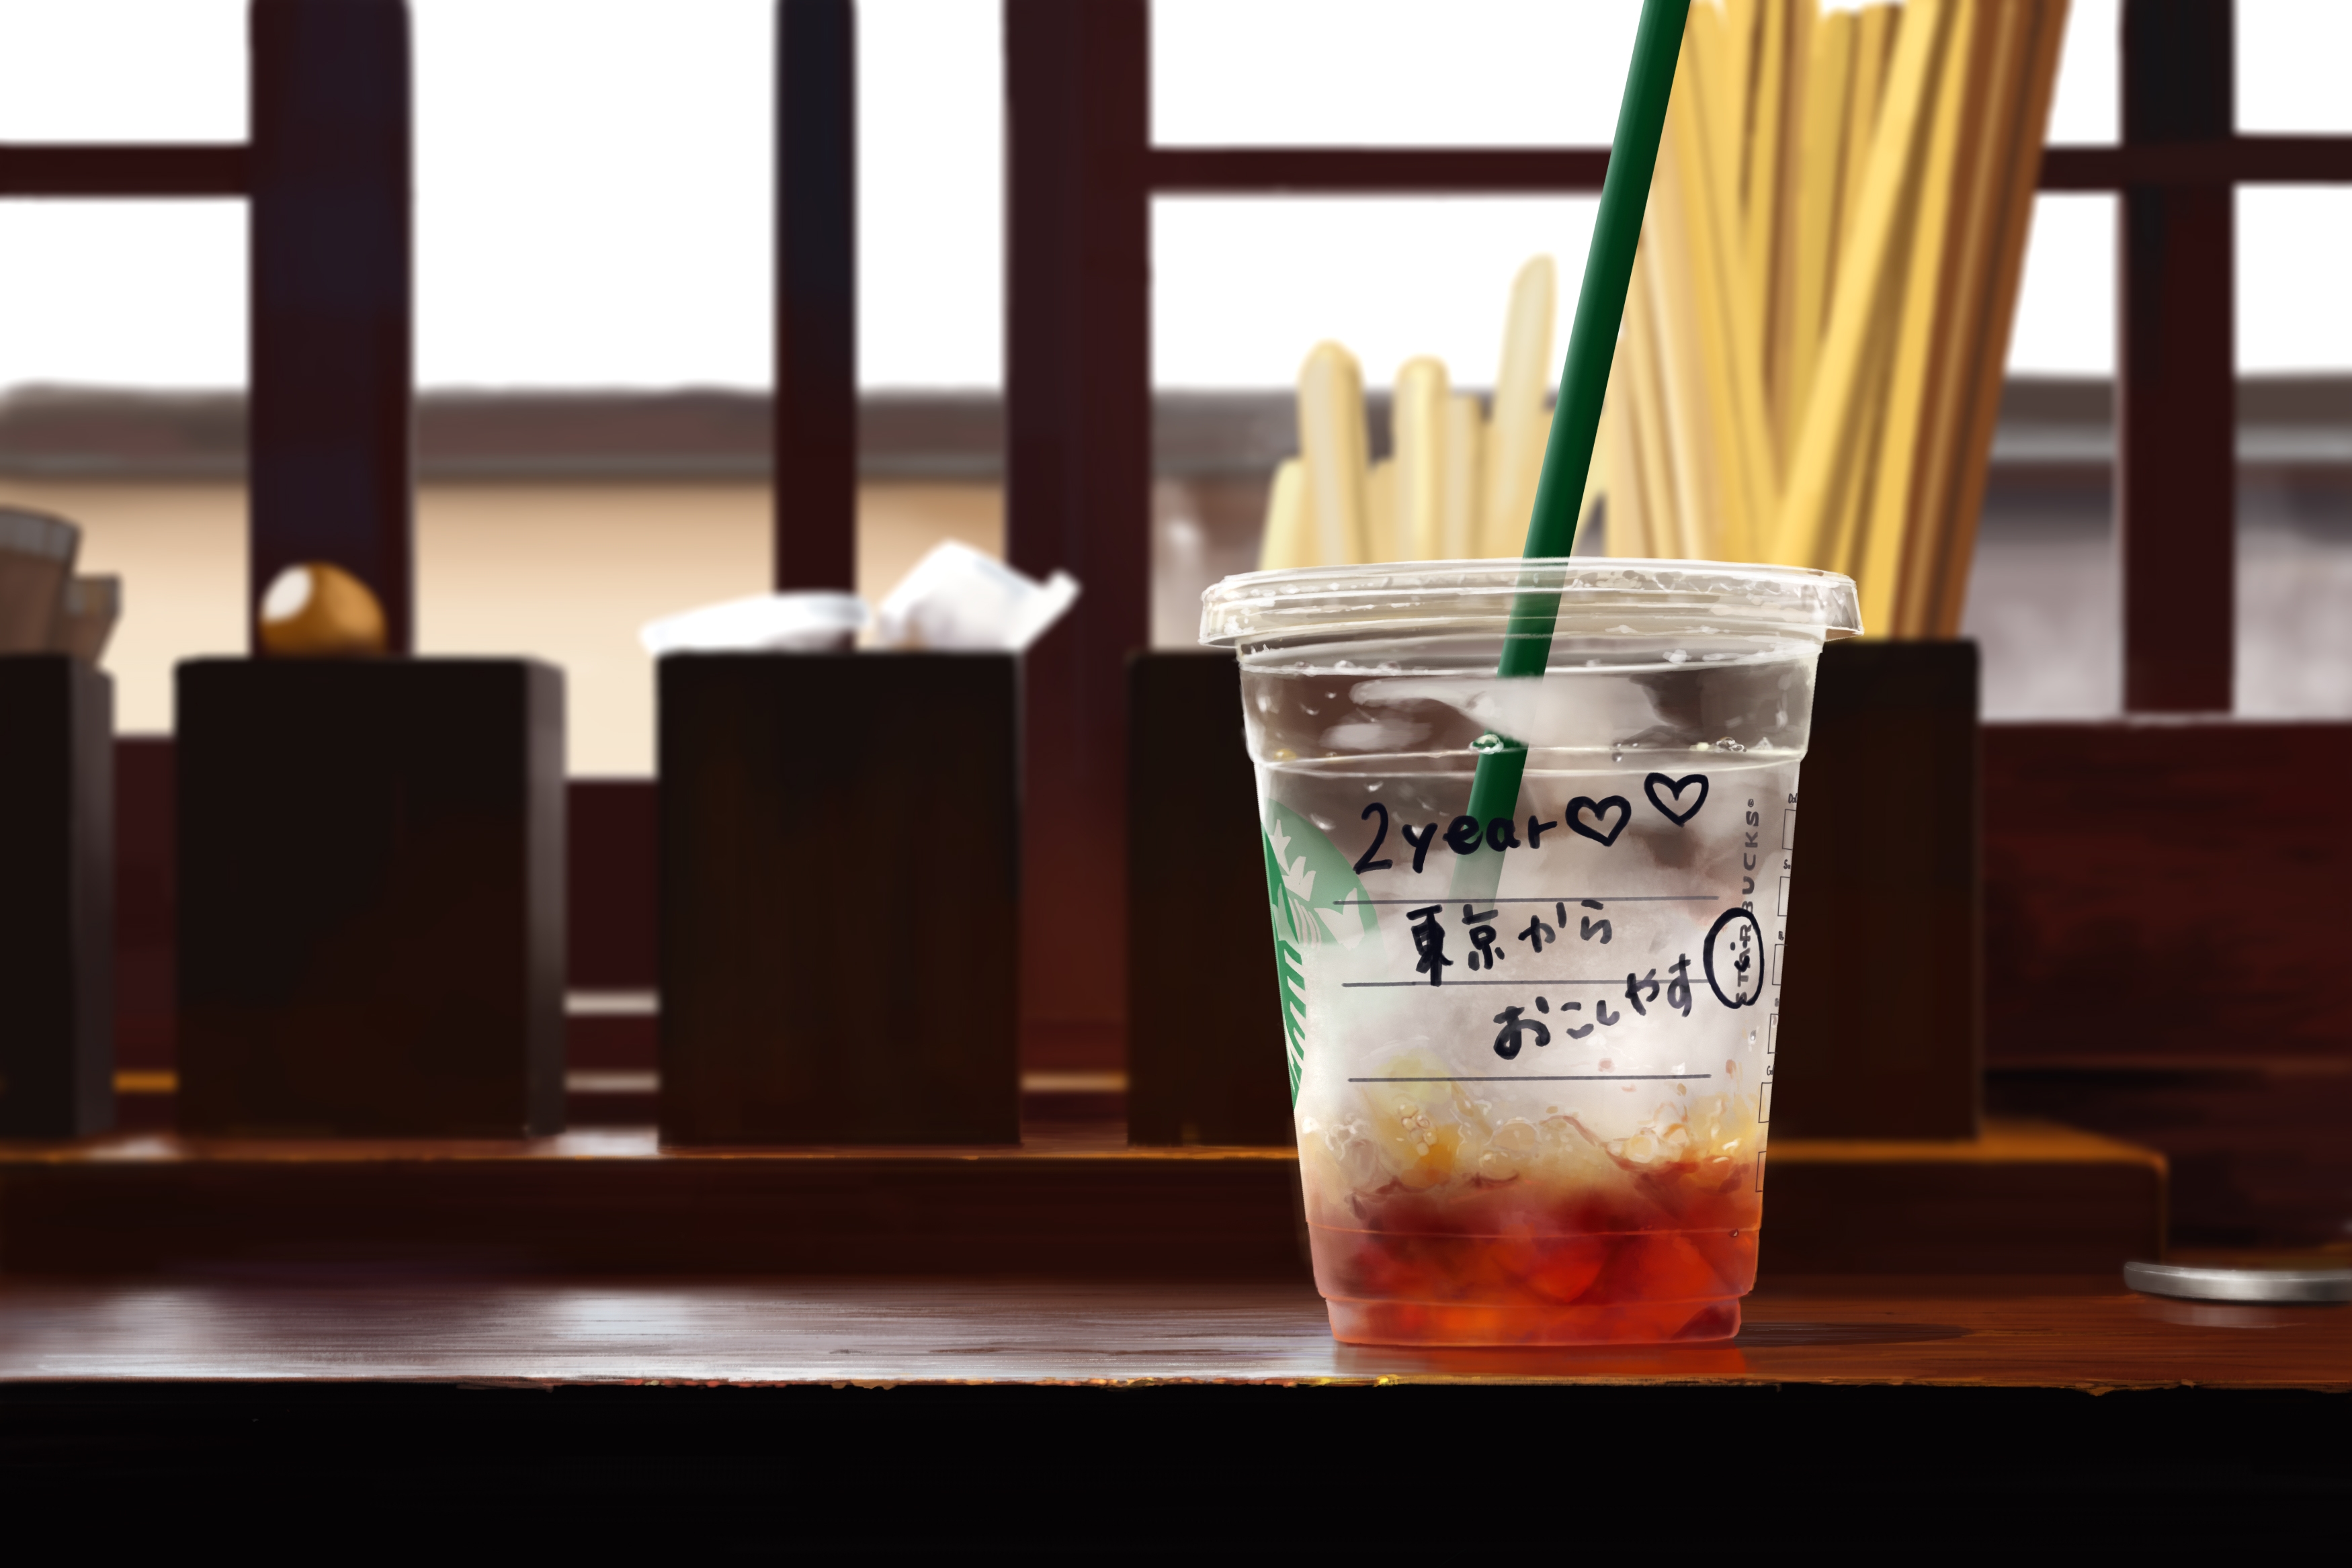 Wallpapers Starbucks drinks glass on the desktop